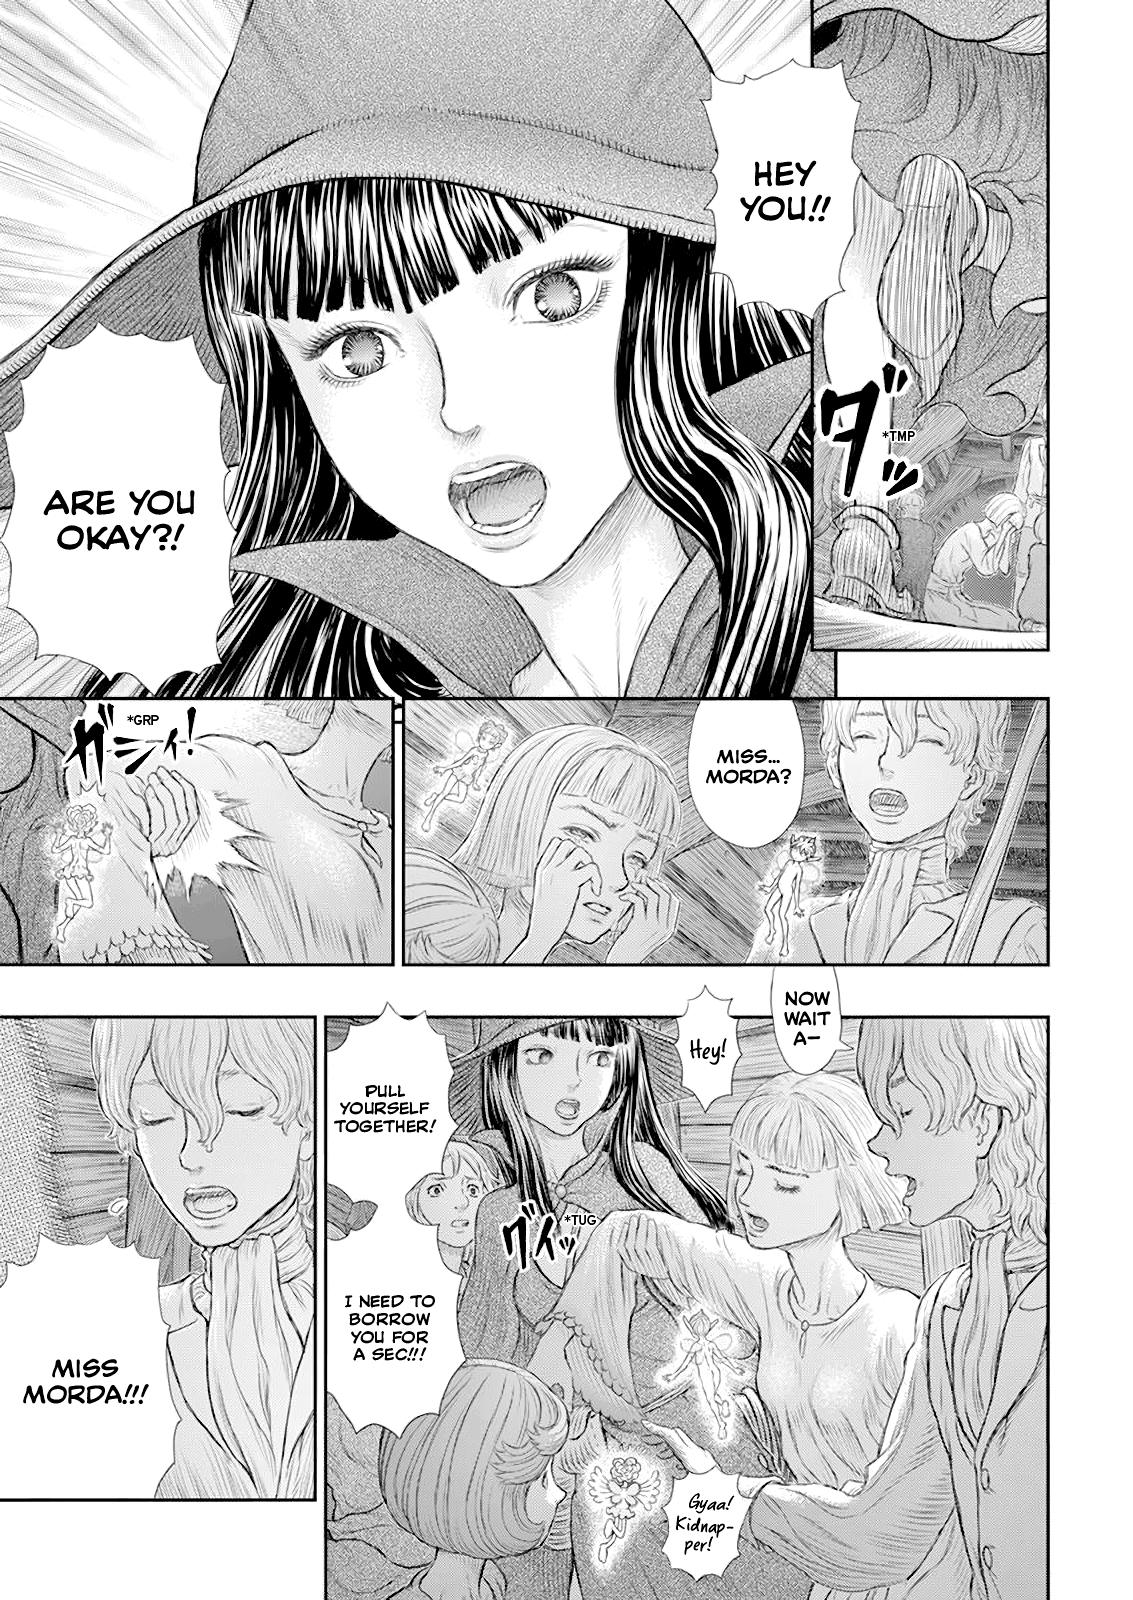 Berserk Manga Chapter 370 image 06